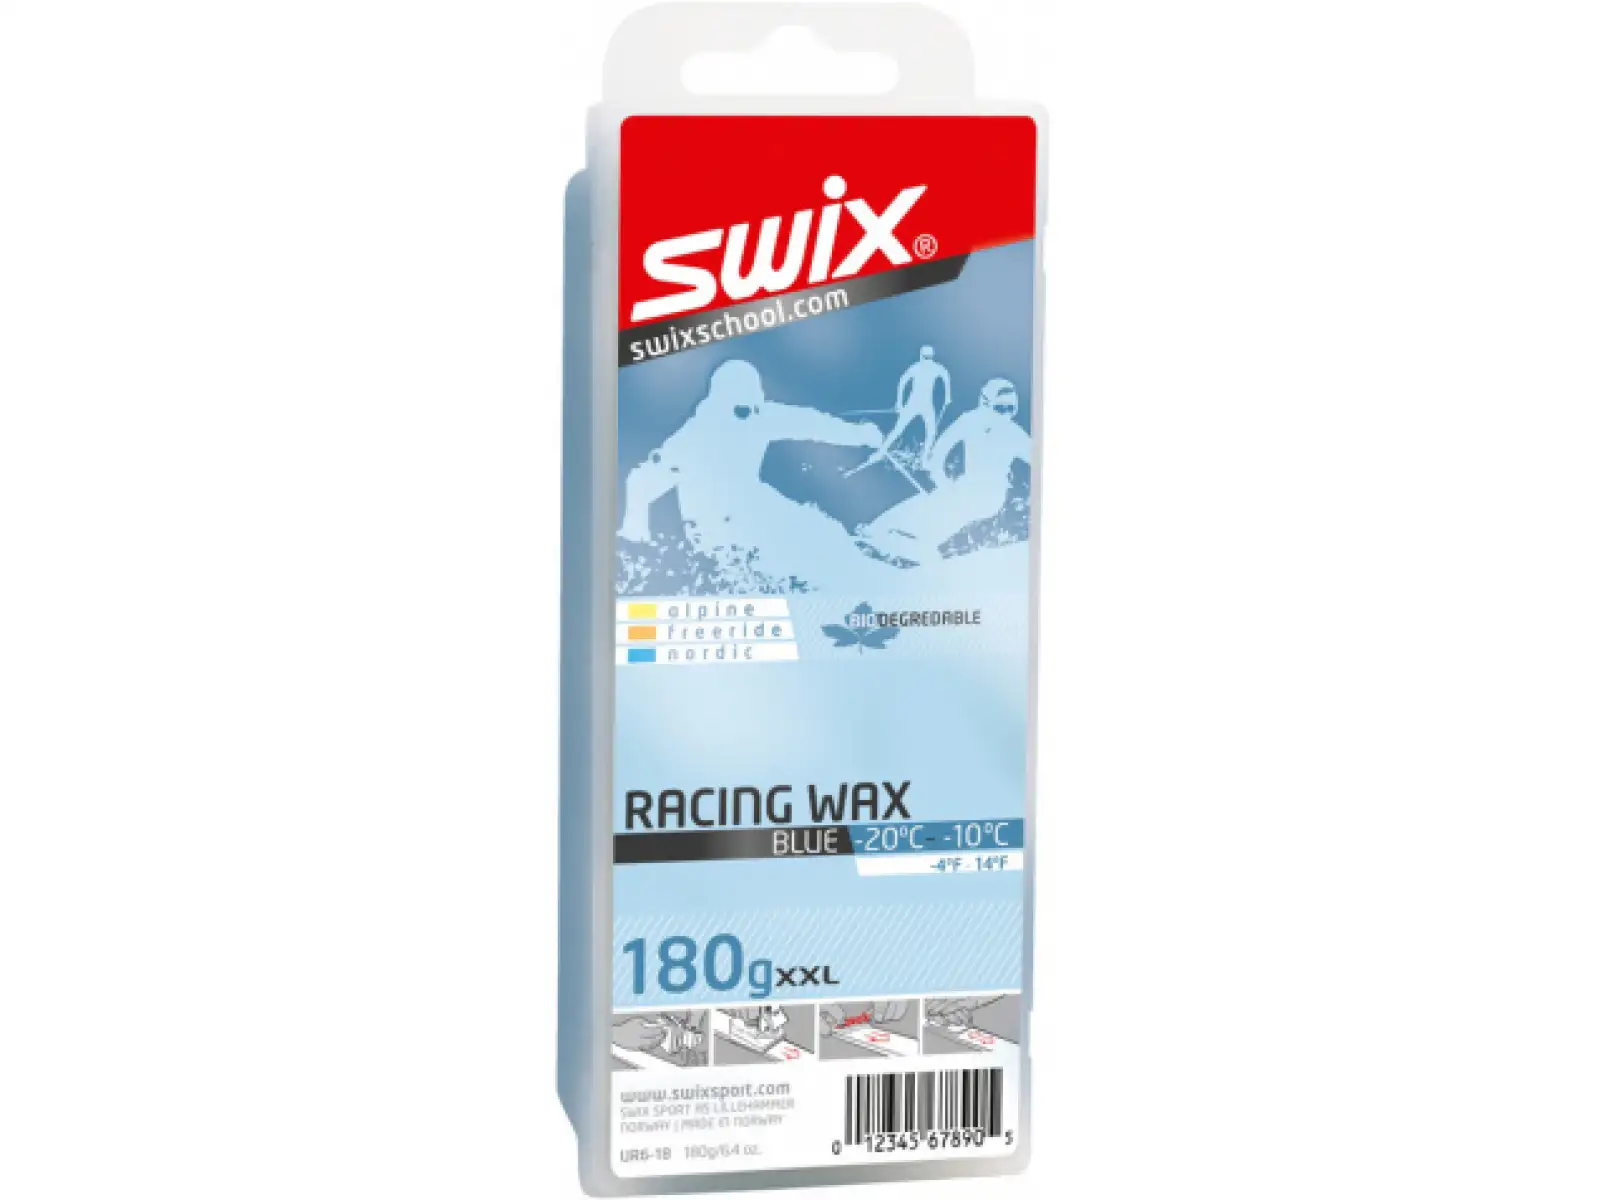 Swix závodný vosk UR6 modrý 180 g